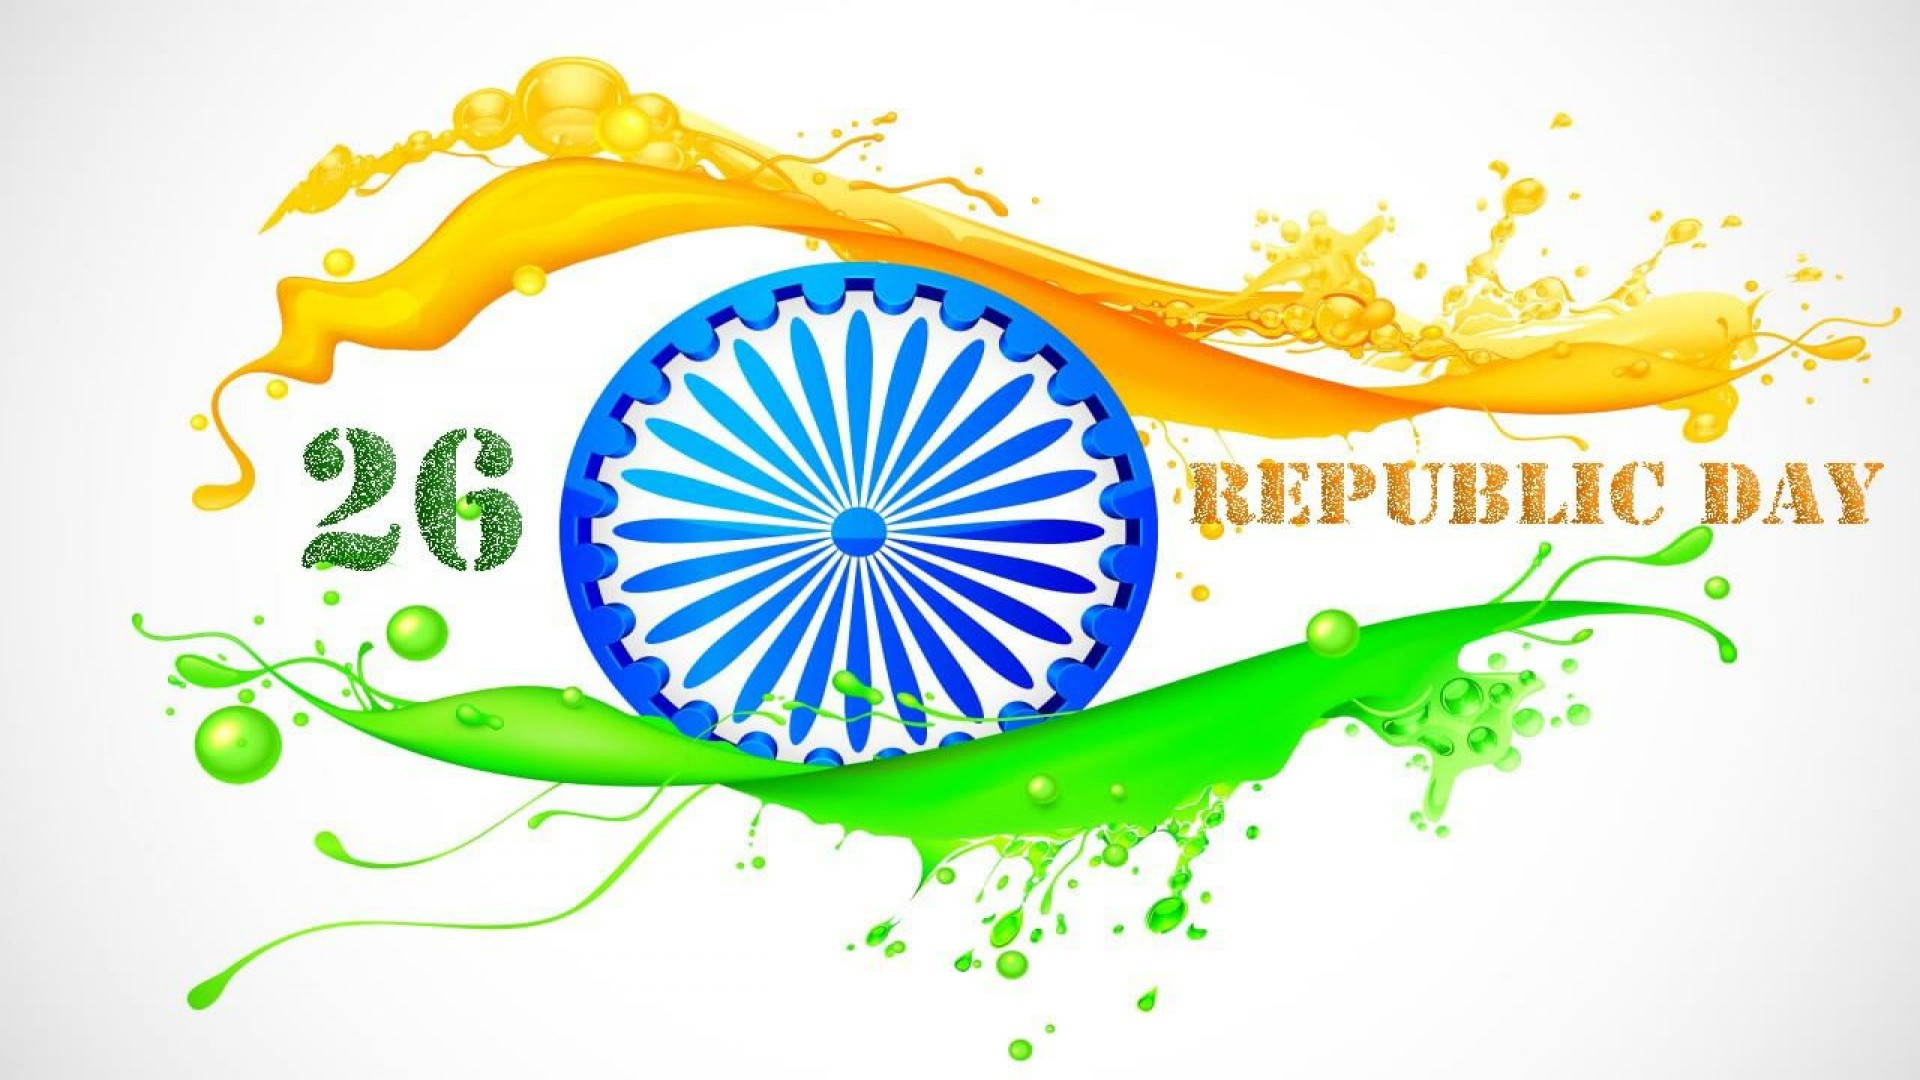 Chakra Art Republic Day Background